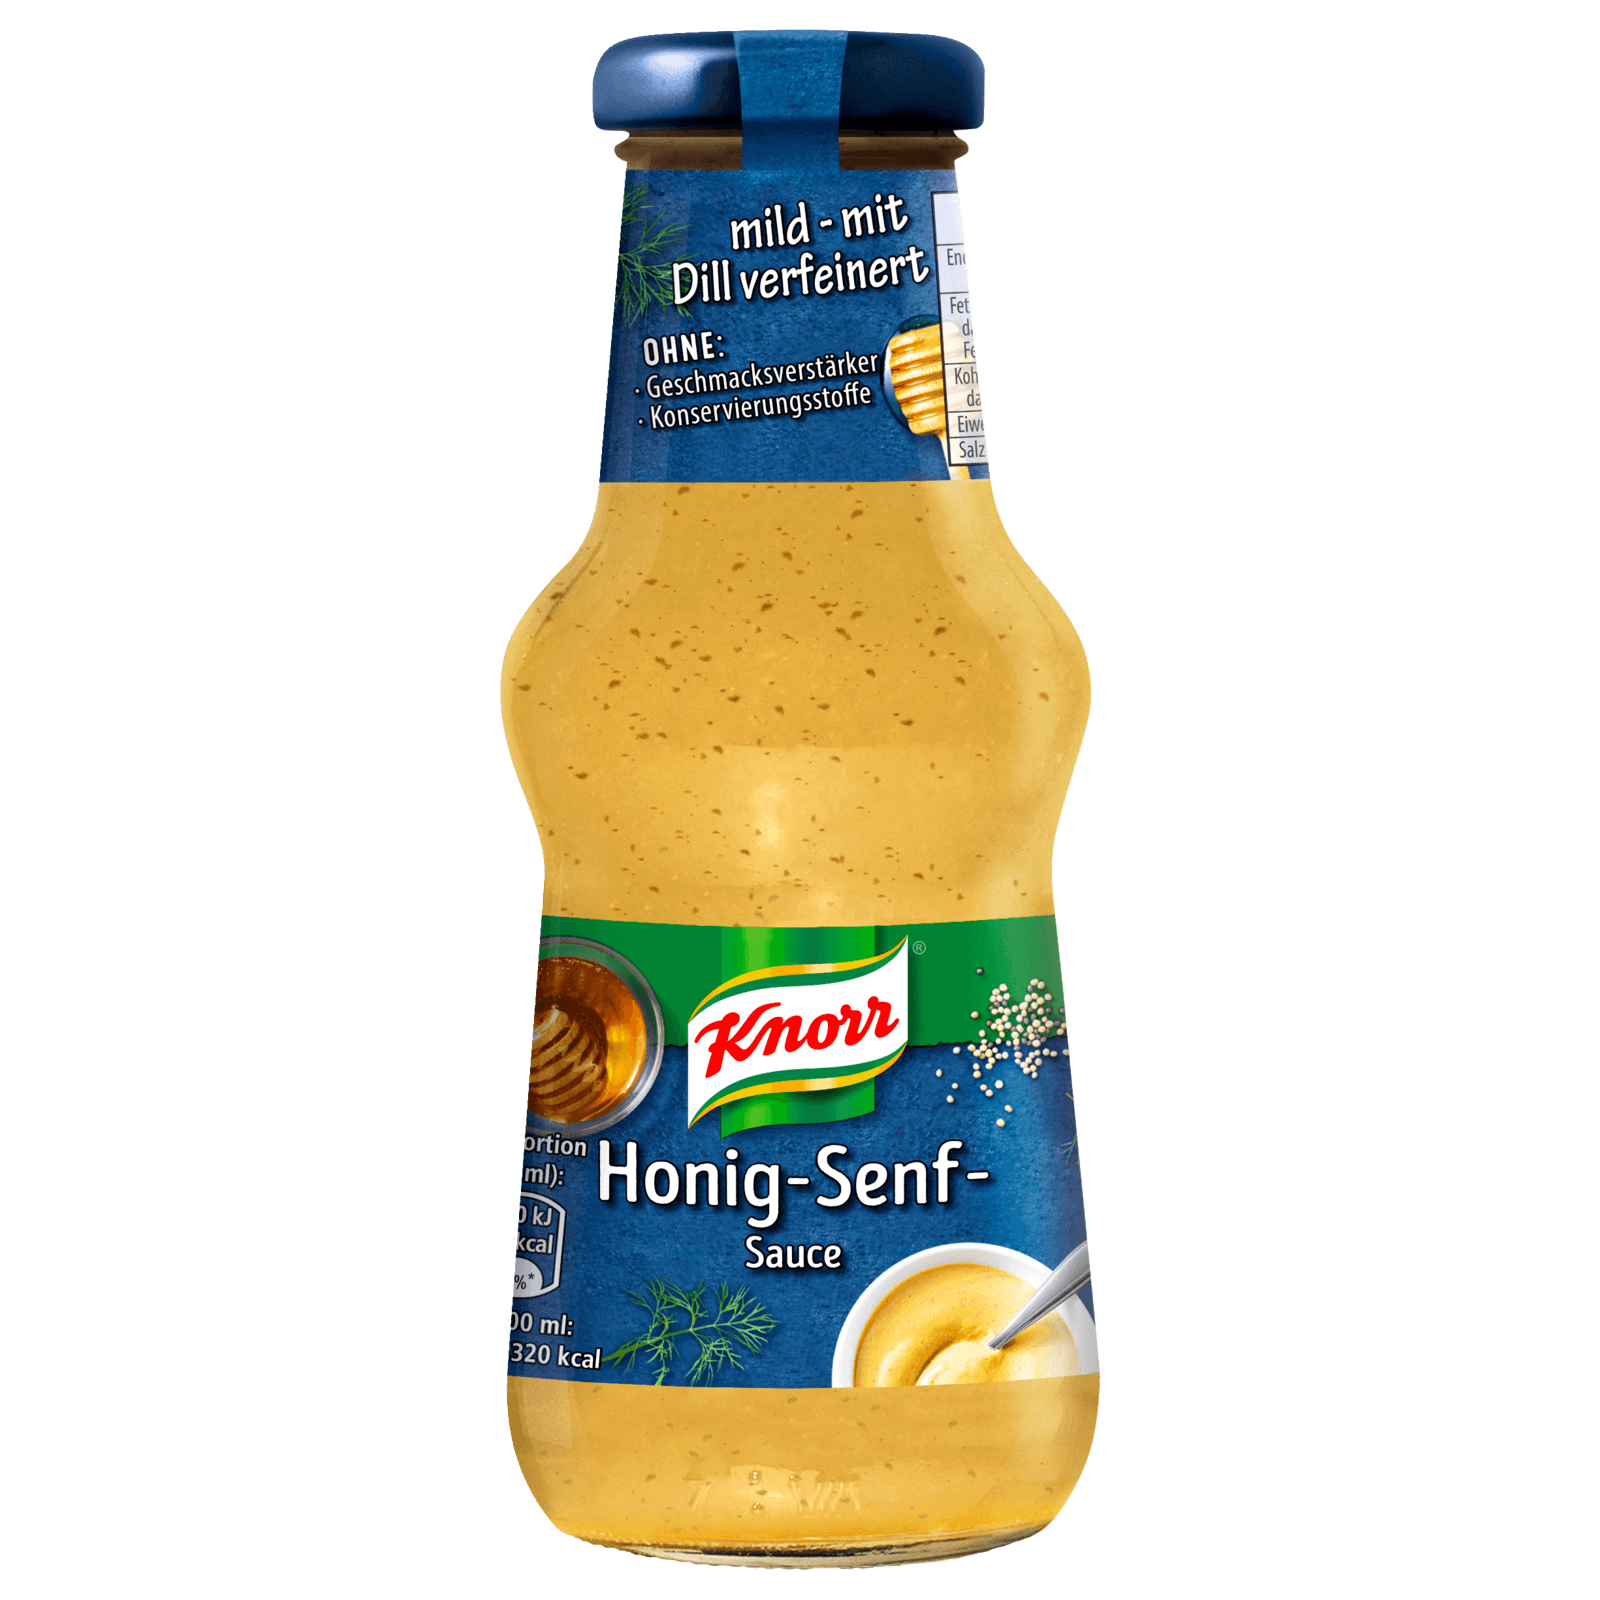 Knorr Honig-Senf-Dill-Sauce 250ml bei REWE online bestellen!